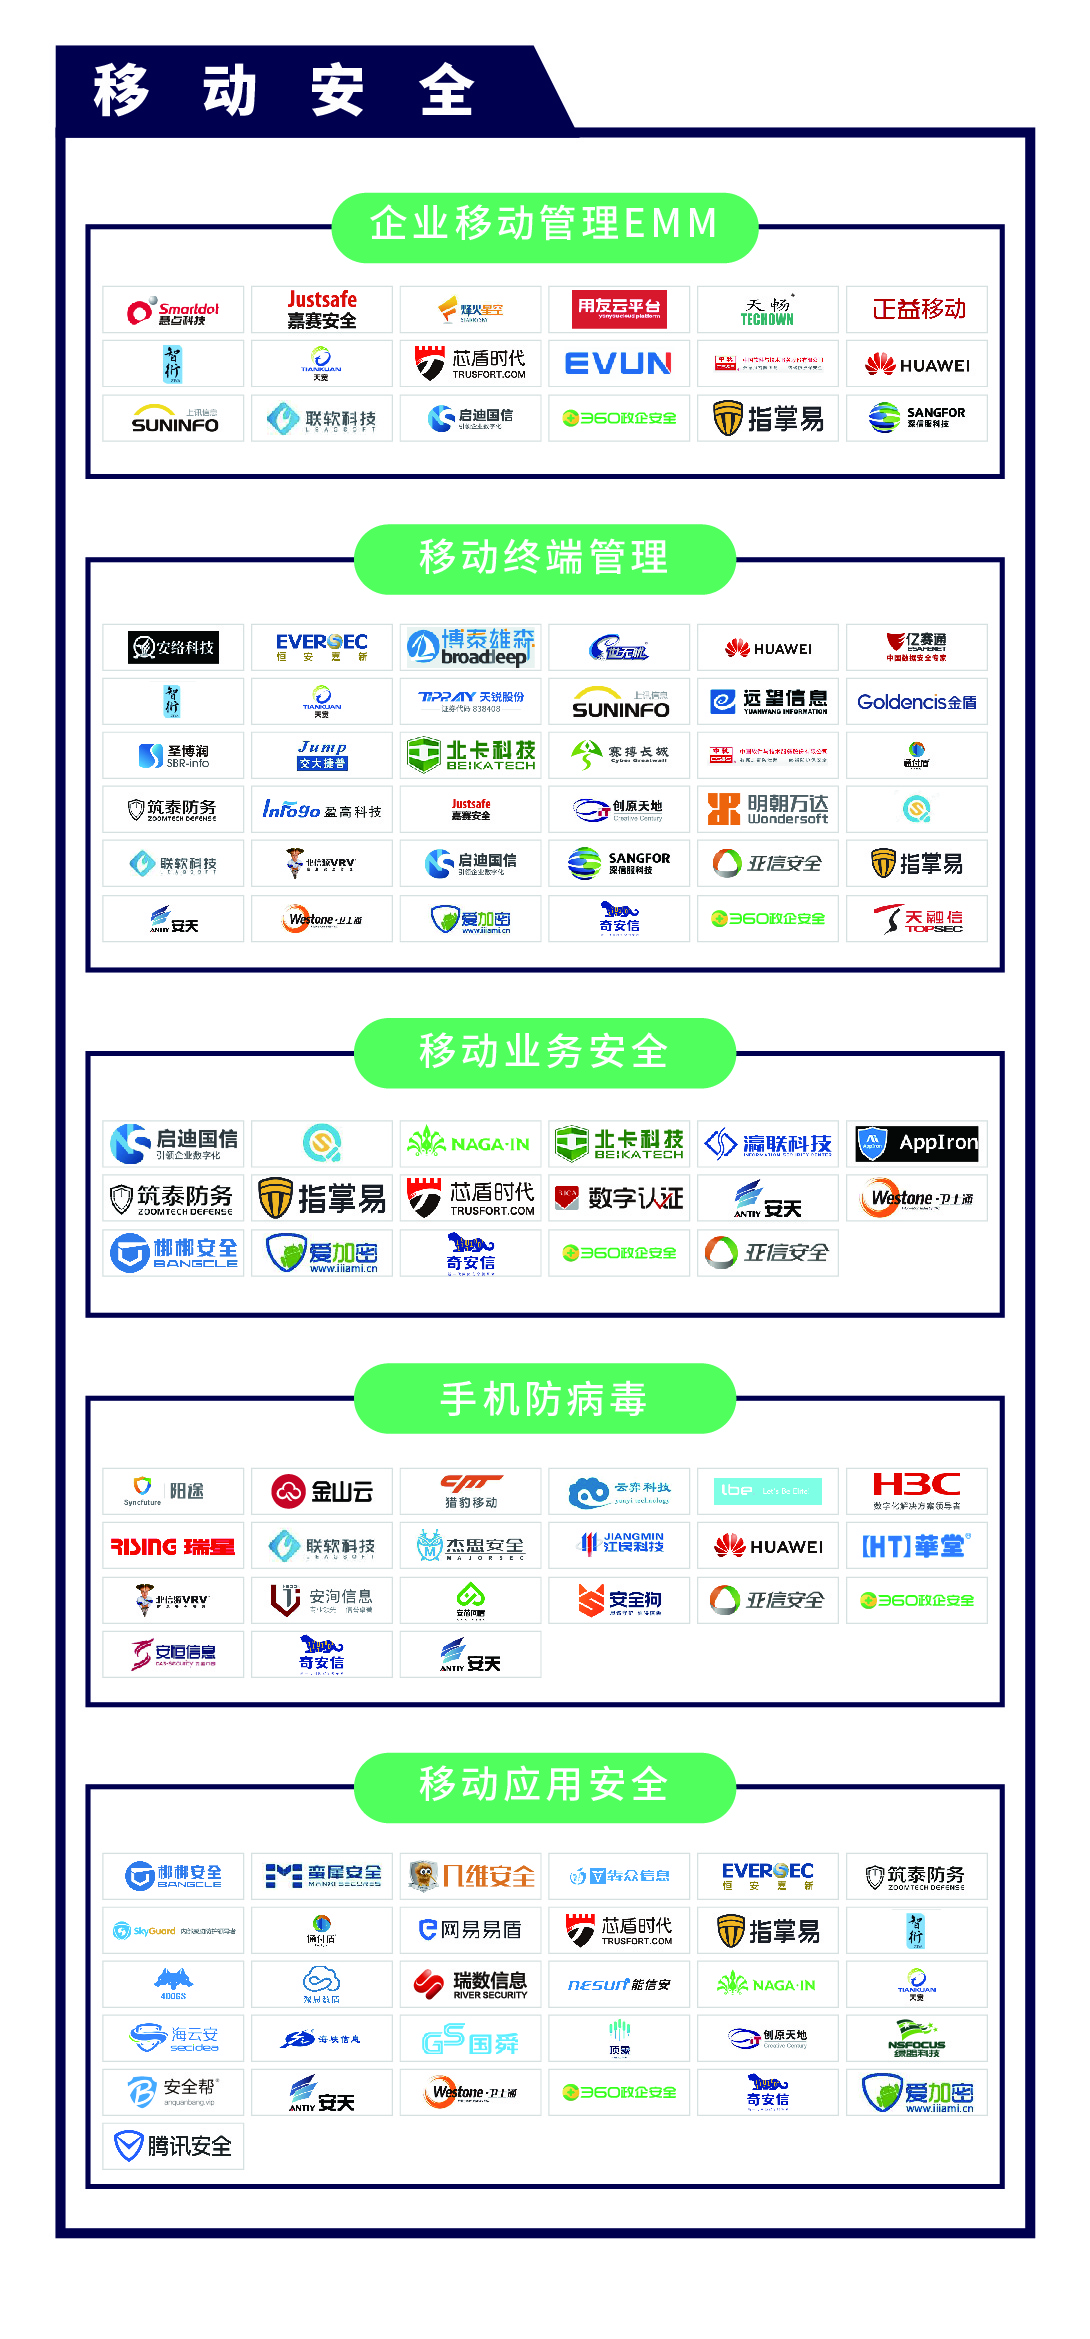 《CCSIP 2020中国网络安全产业全景图》正式发布 | FreeBuf咨询-第20张图片-网盾网络安全培训